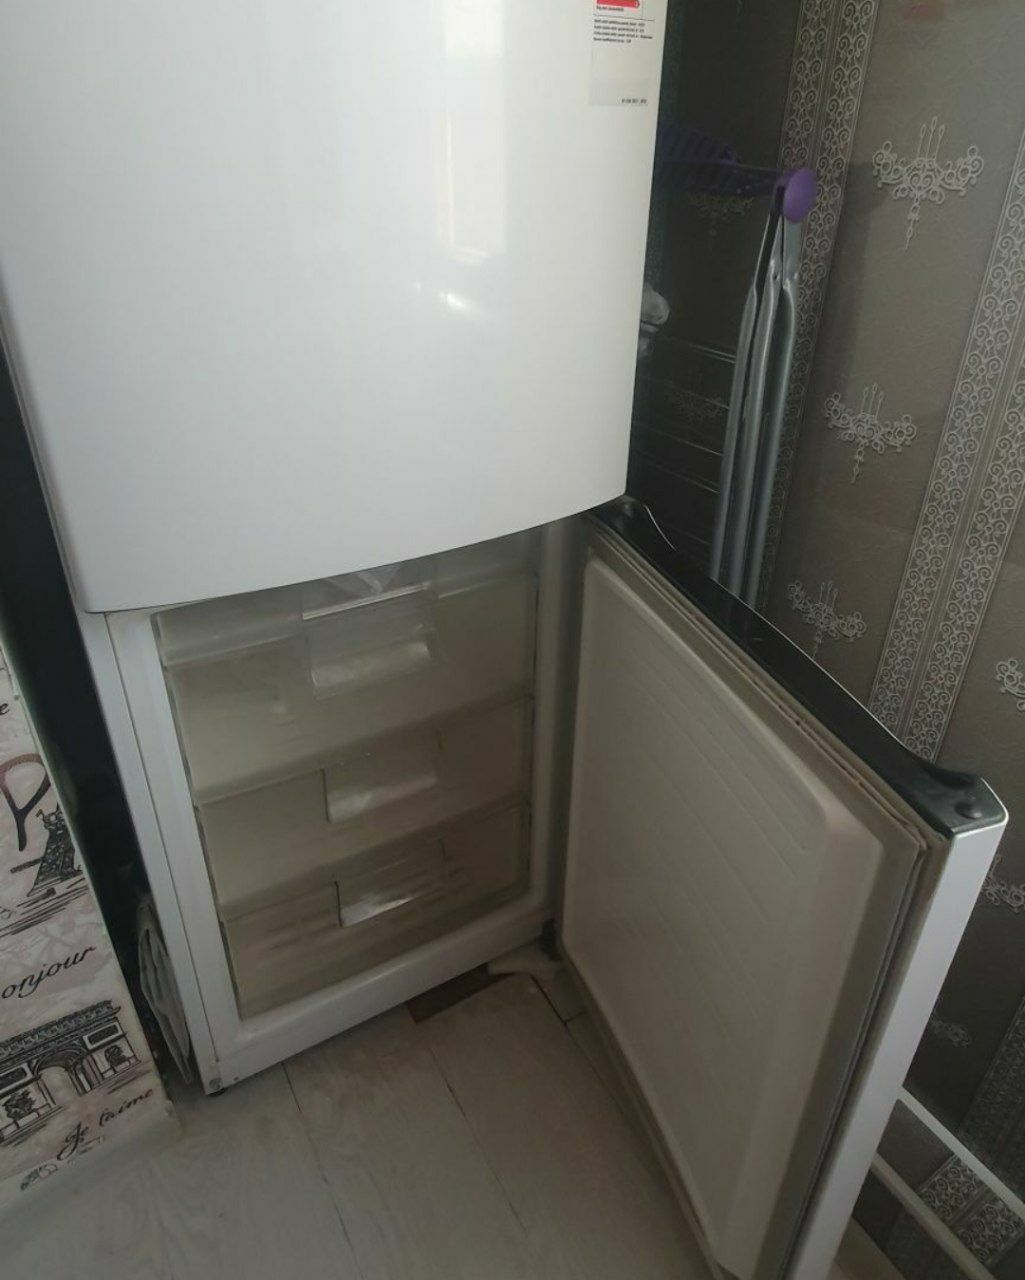 Холодильник LG большой купила в 2019 году новый на Малике